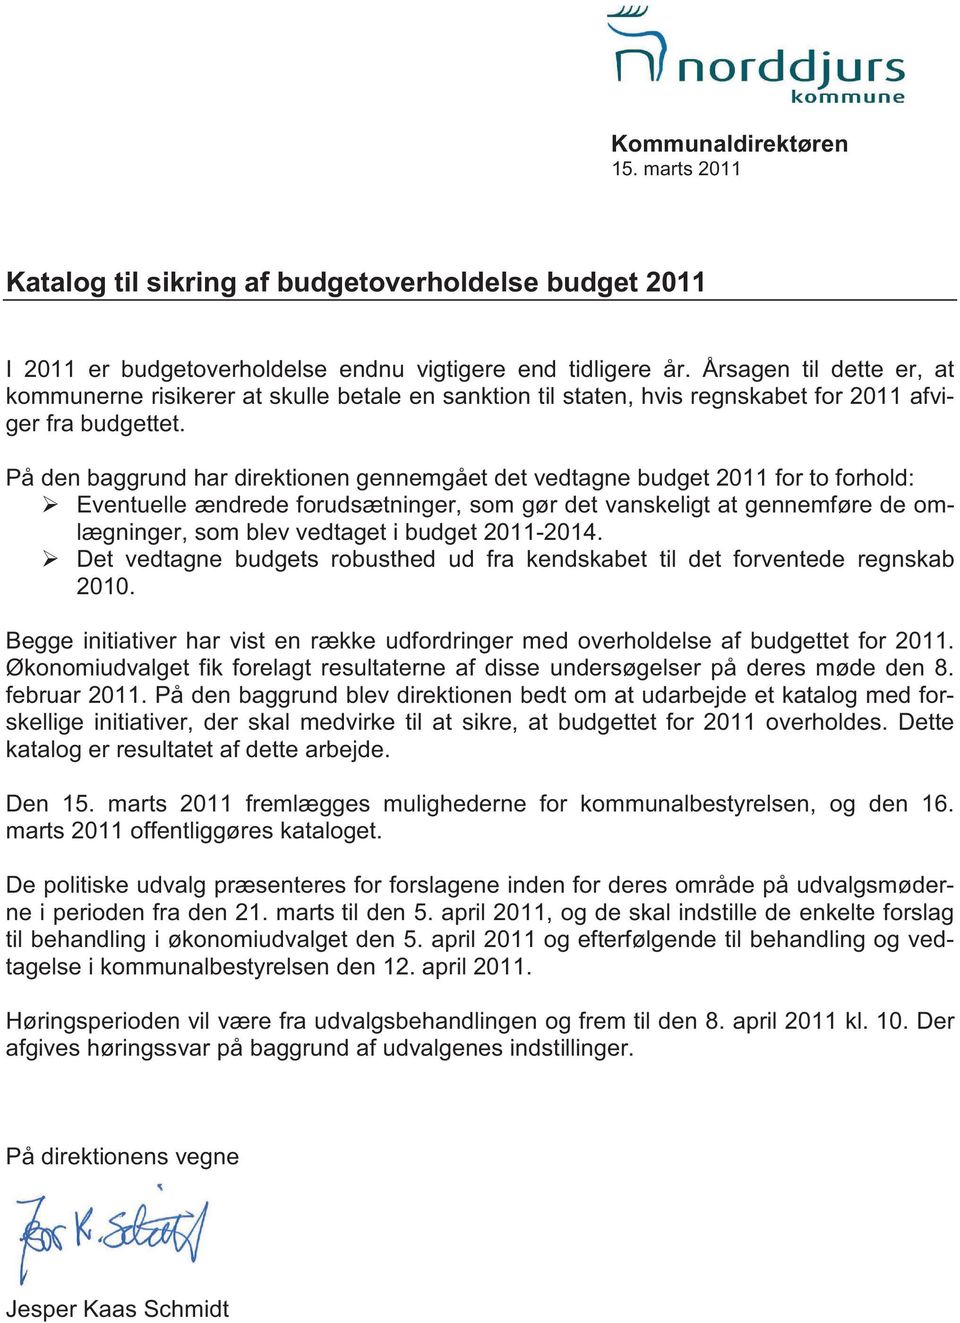 På den baggrund har direktionen gennemgået det vedtagne budget 2011 for to forhold: Eventuelle ændrede forudsætninger, som gør det vanskeligt at gennemføre de omlægninger, som blev vedtaget i budget